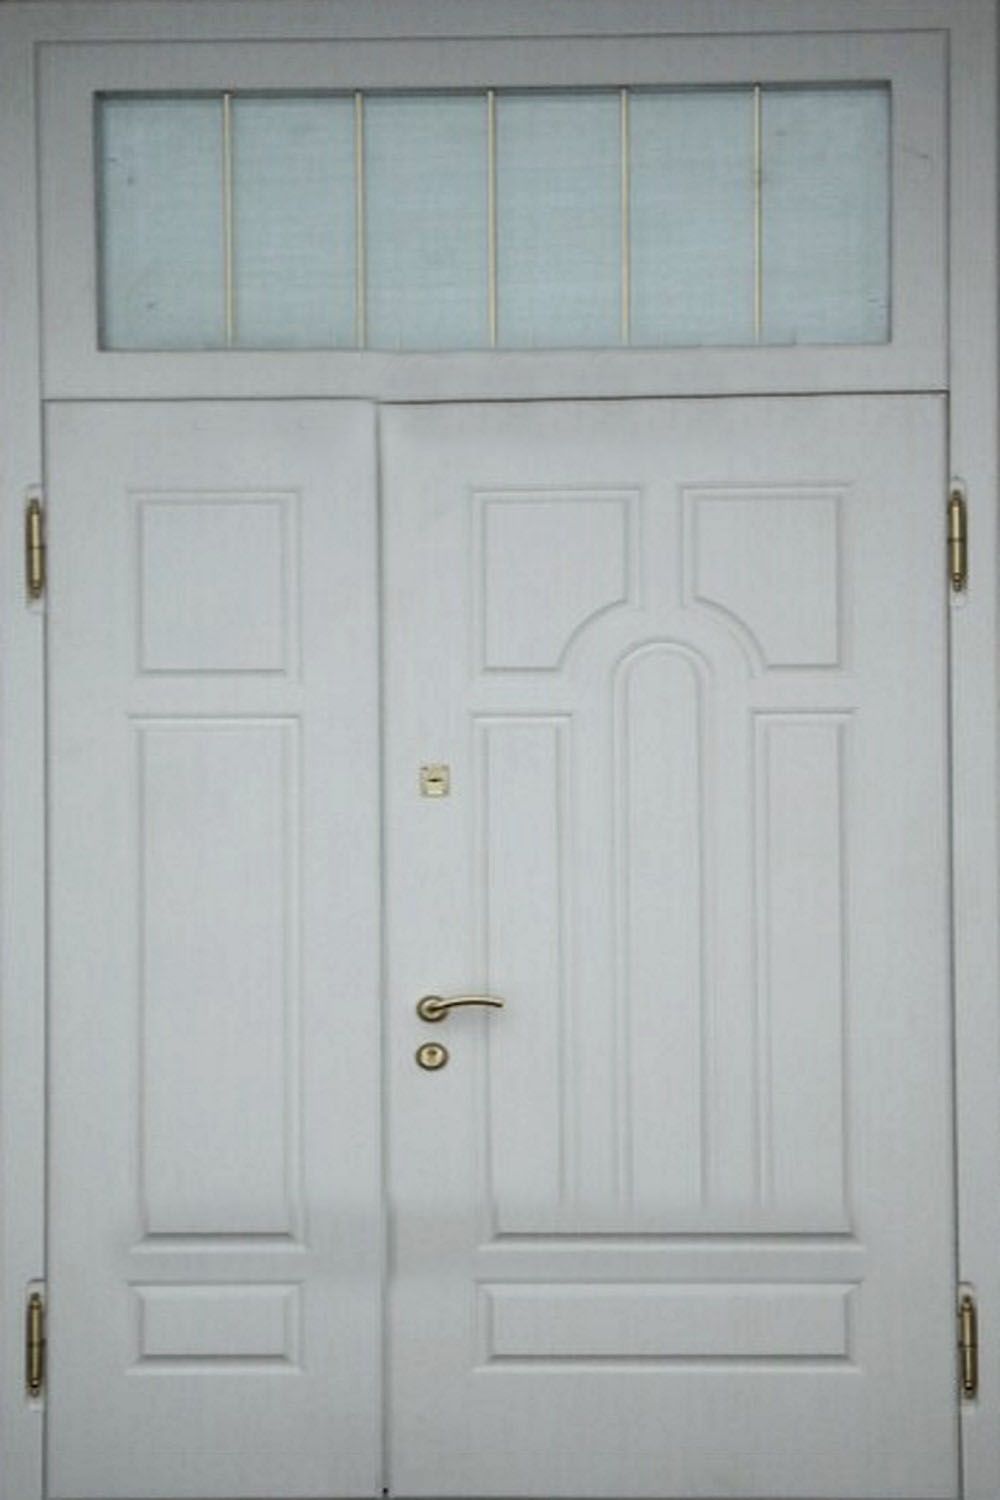 Дверь с фрамугой и вставками (Арт. F53)